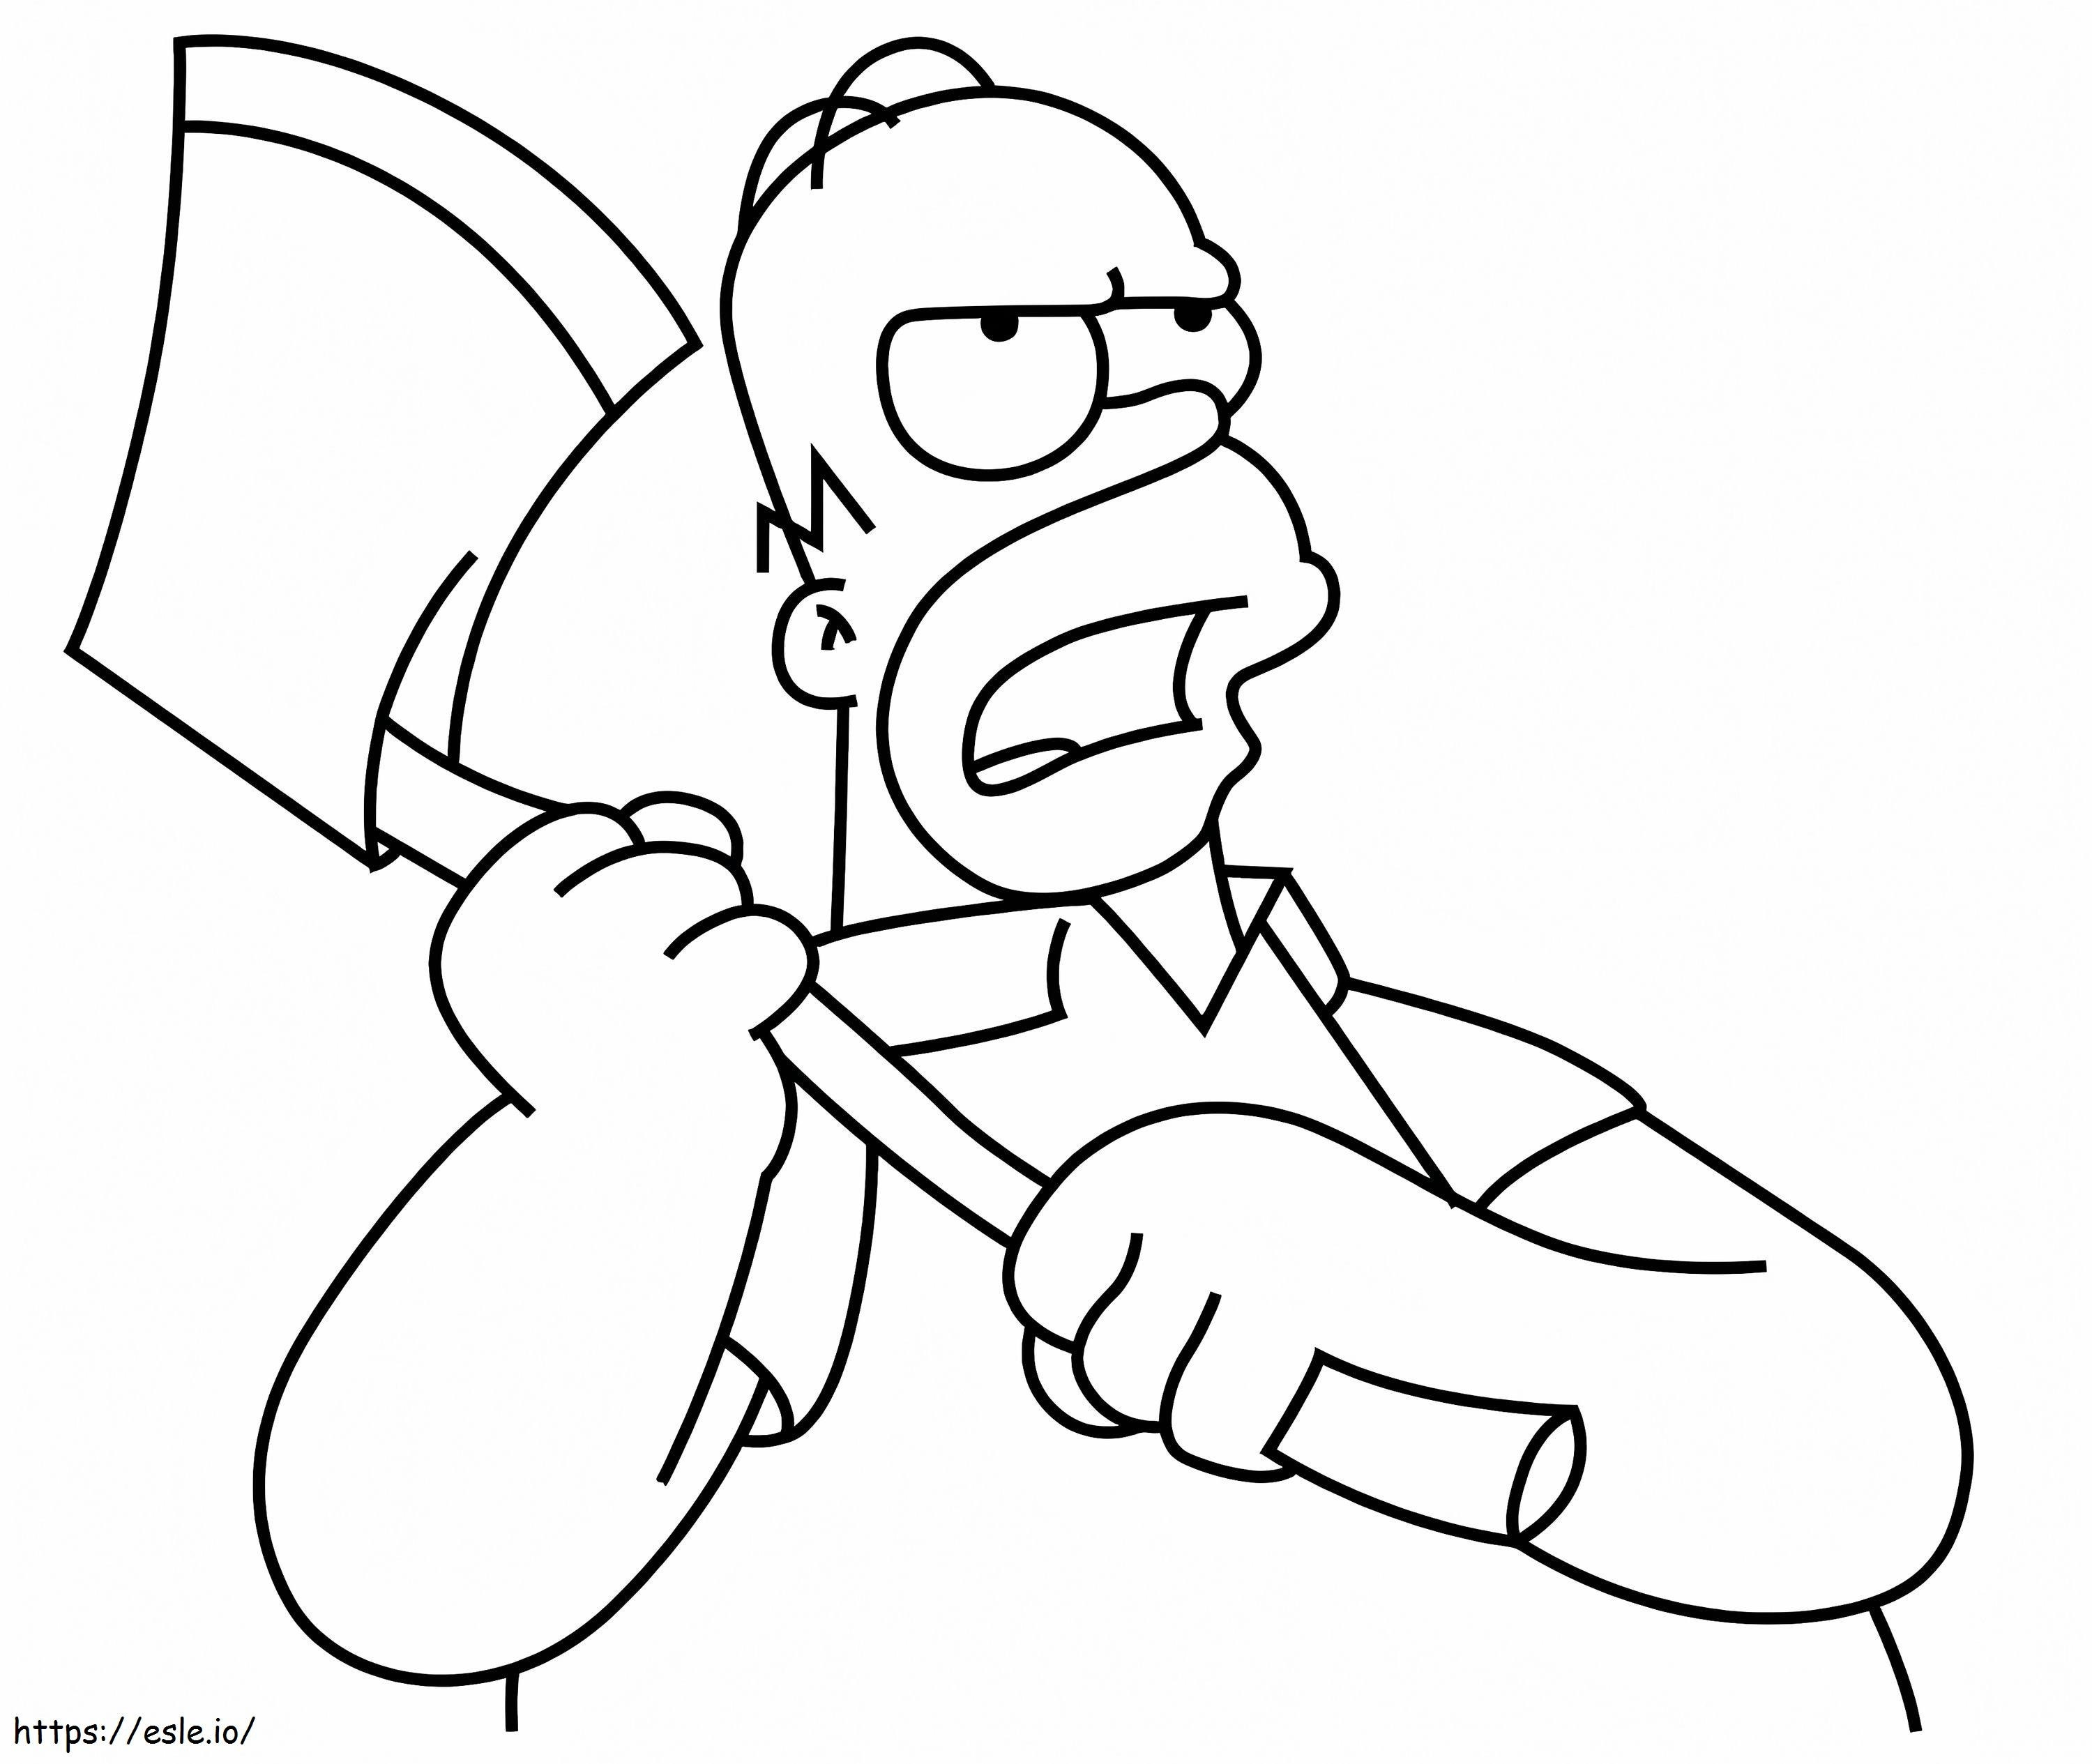 Homer Simpson mit Axt ausmalbilder